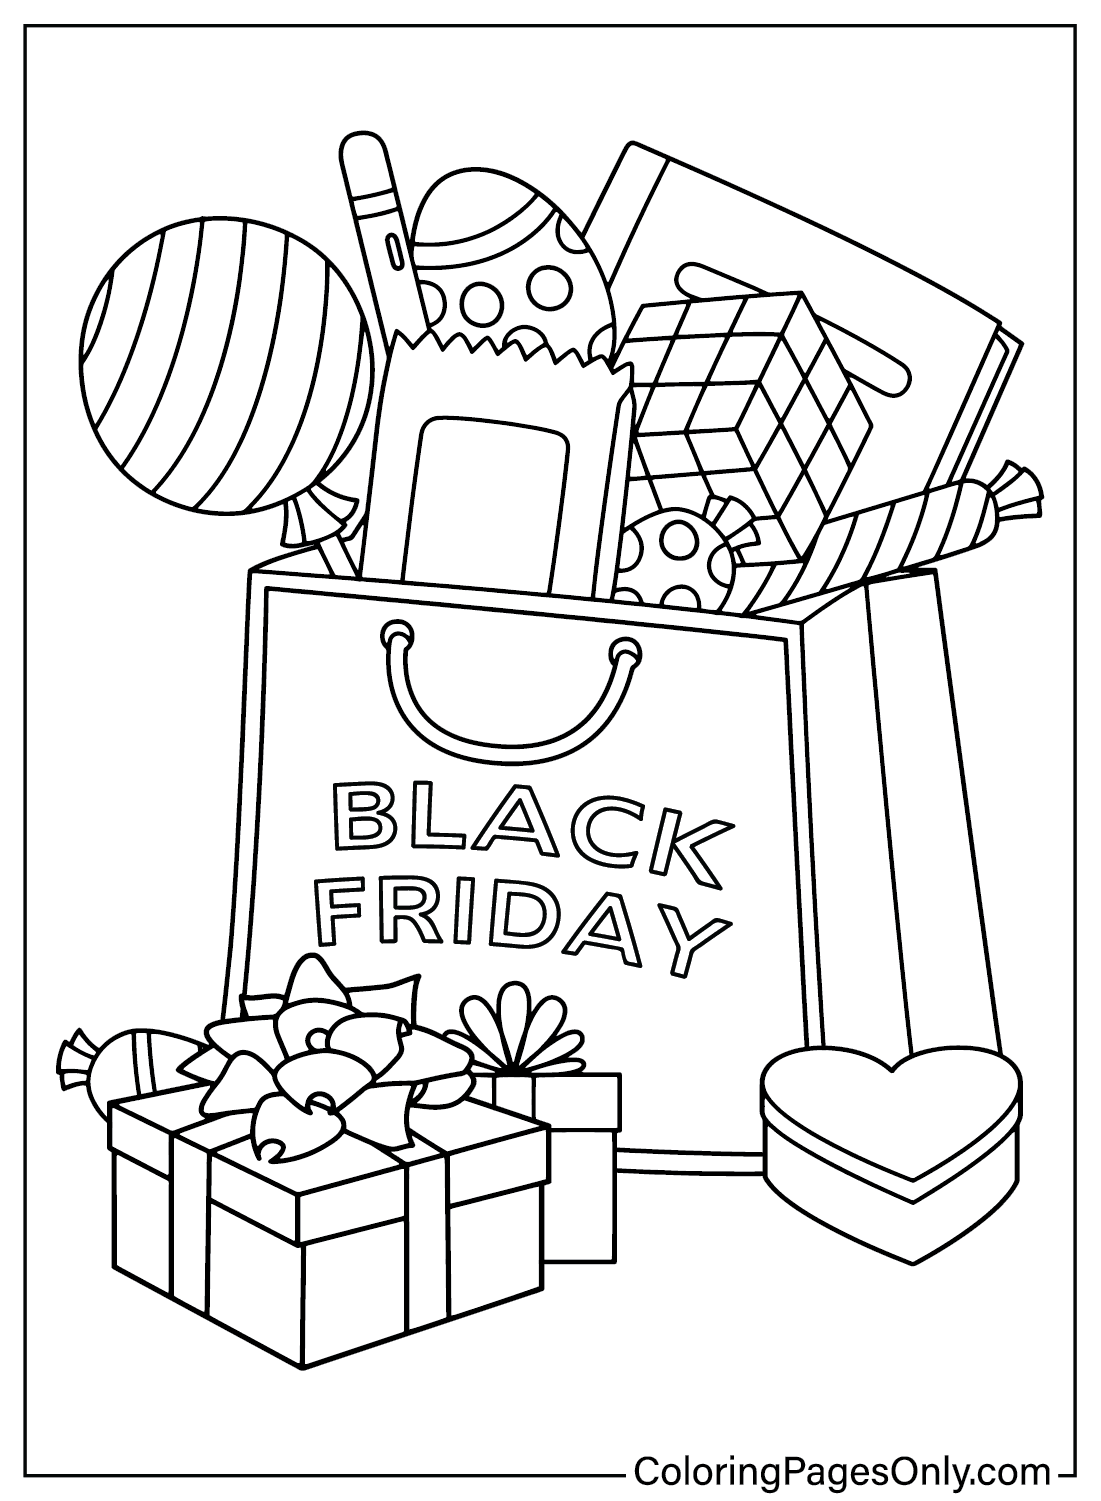 Stampa della pagina da colorare del Black Friday dal Black Friday